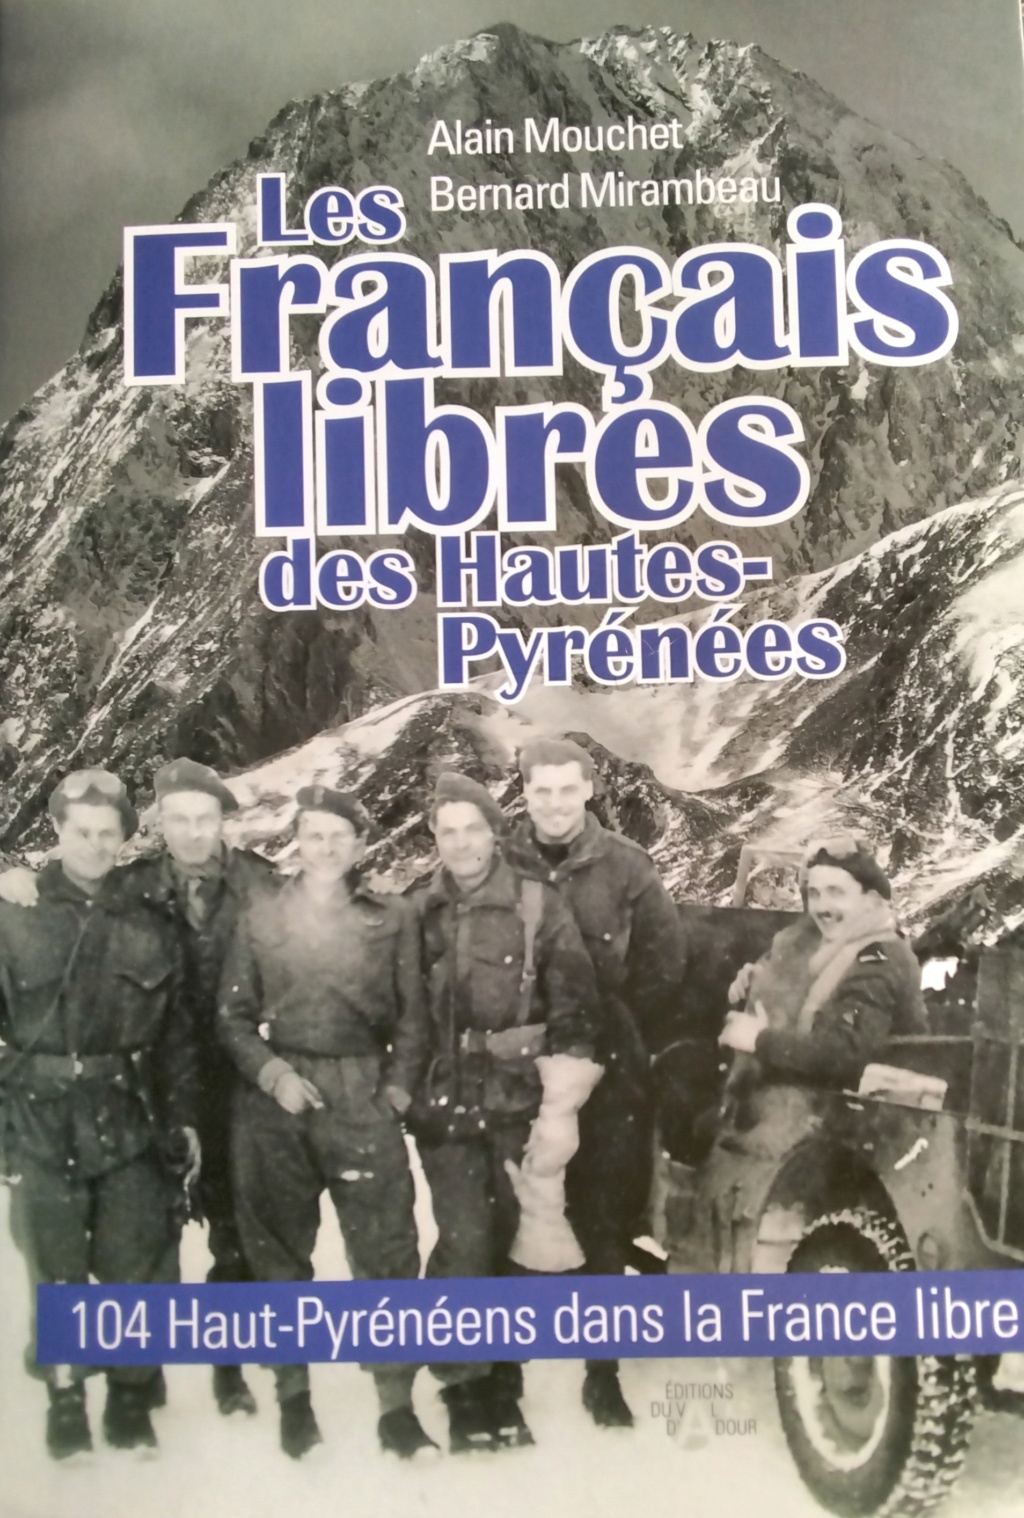 Les Français Libres des Hautes-Pyrénées -104 Hauts-Pyrénéens 20220710